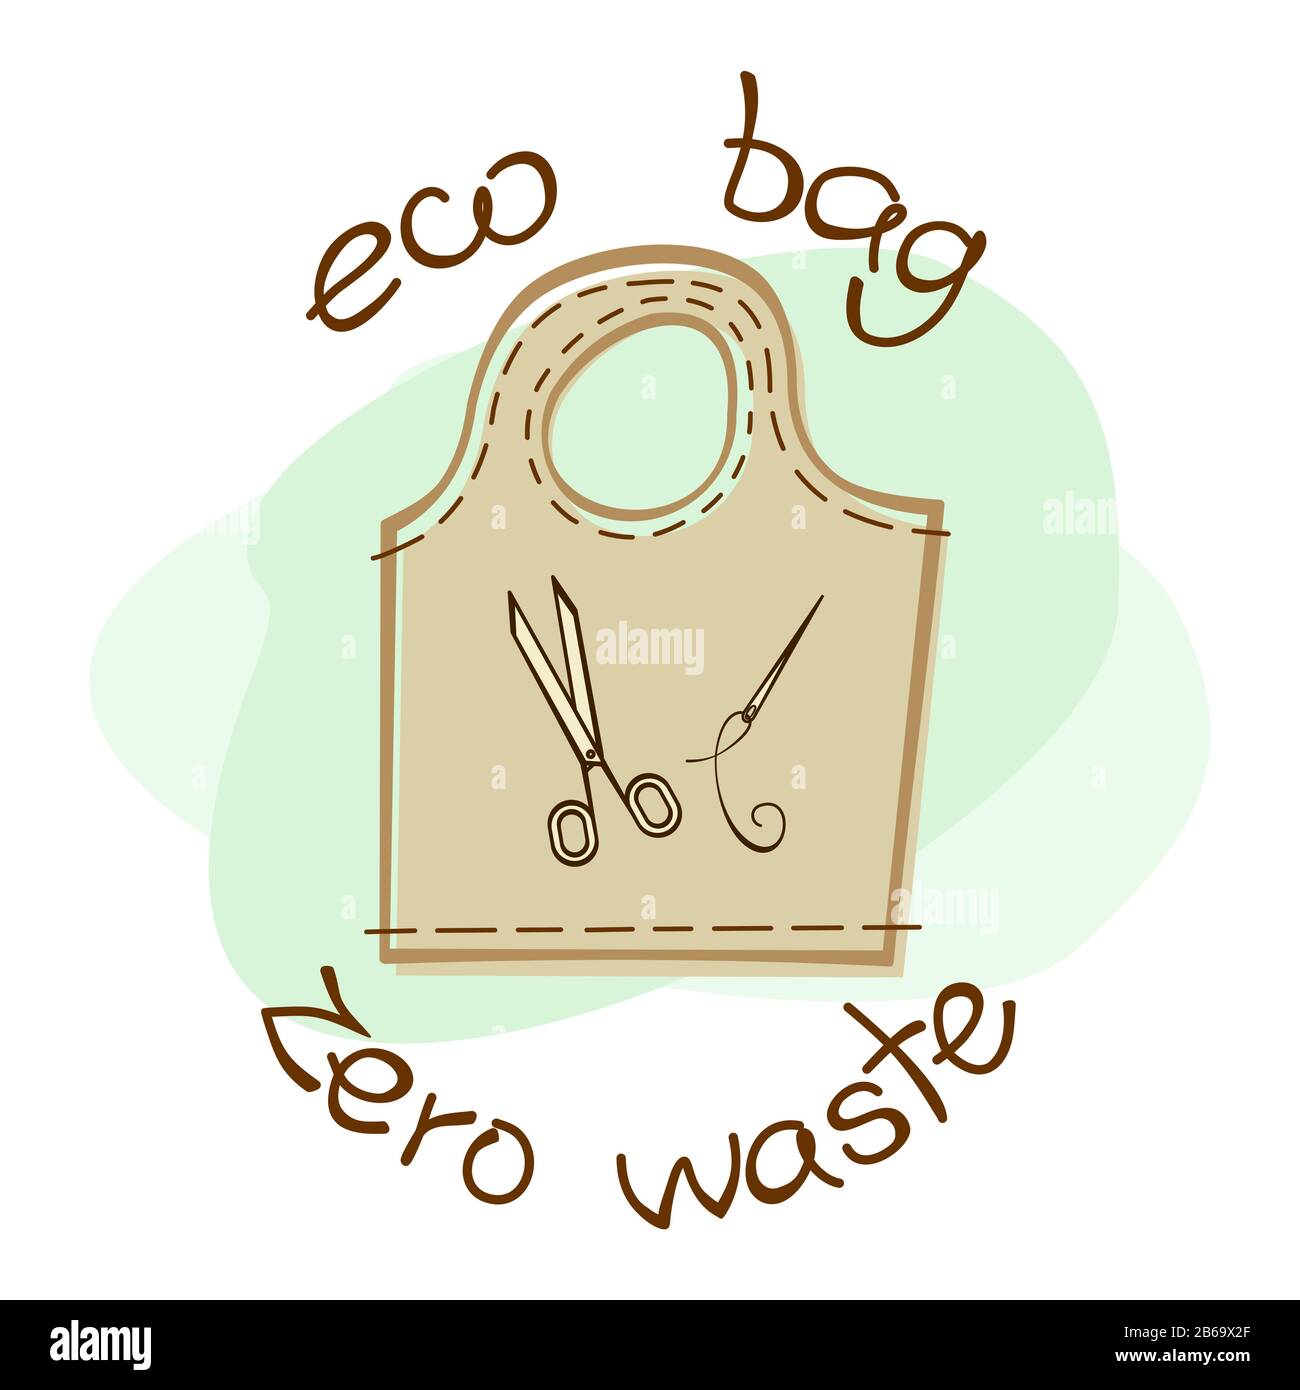 Zéro Déchet Boutique éco Sac Réutilisable Marché Alimentaire écologie  Recycler Durable Dessin Animé Illustration Vectorielle